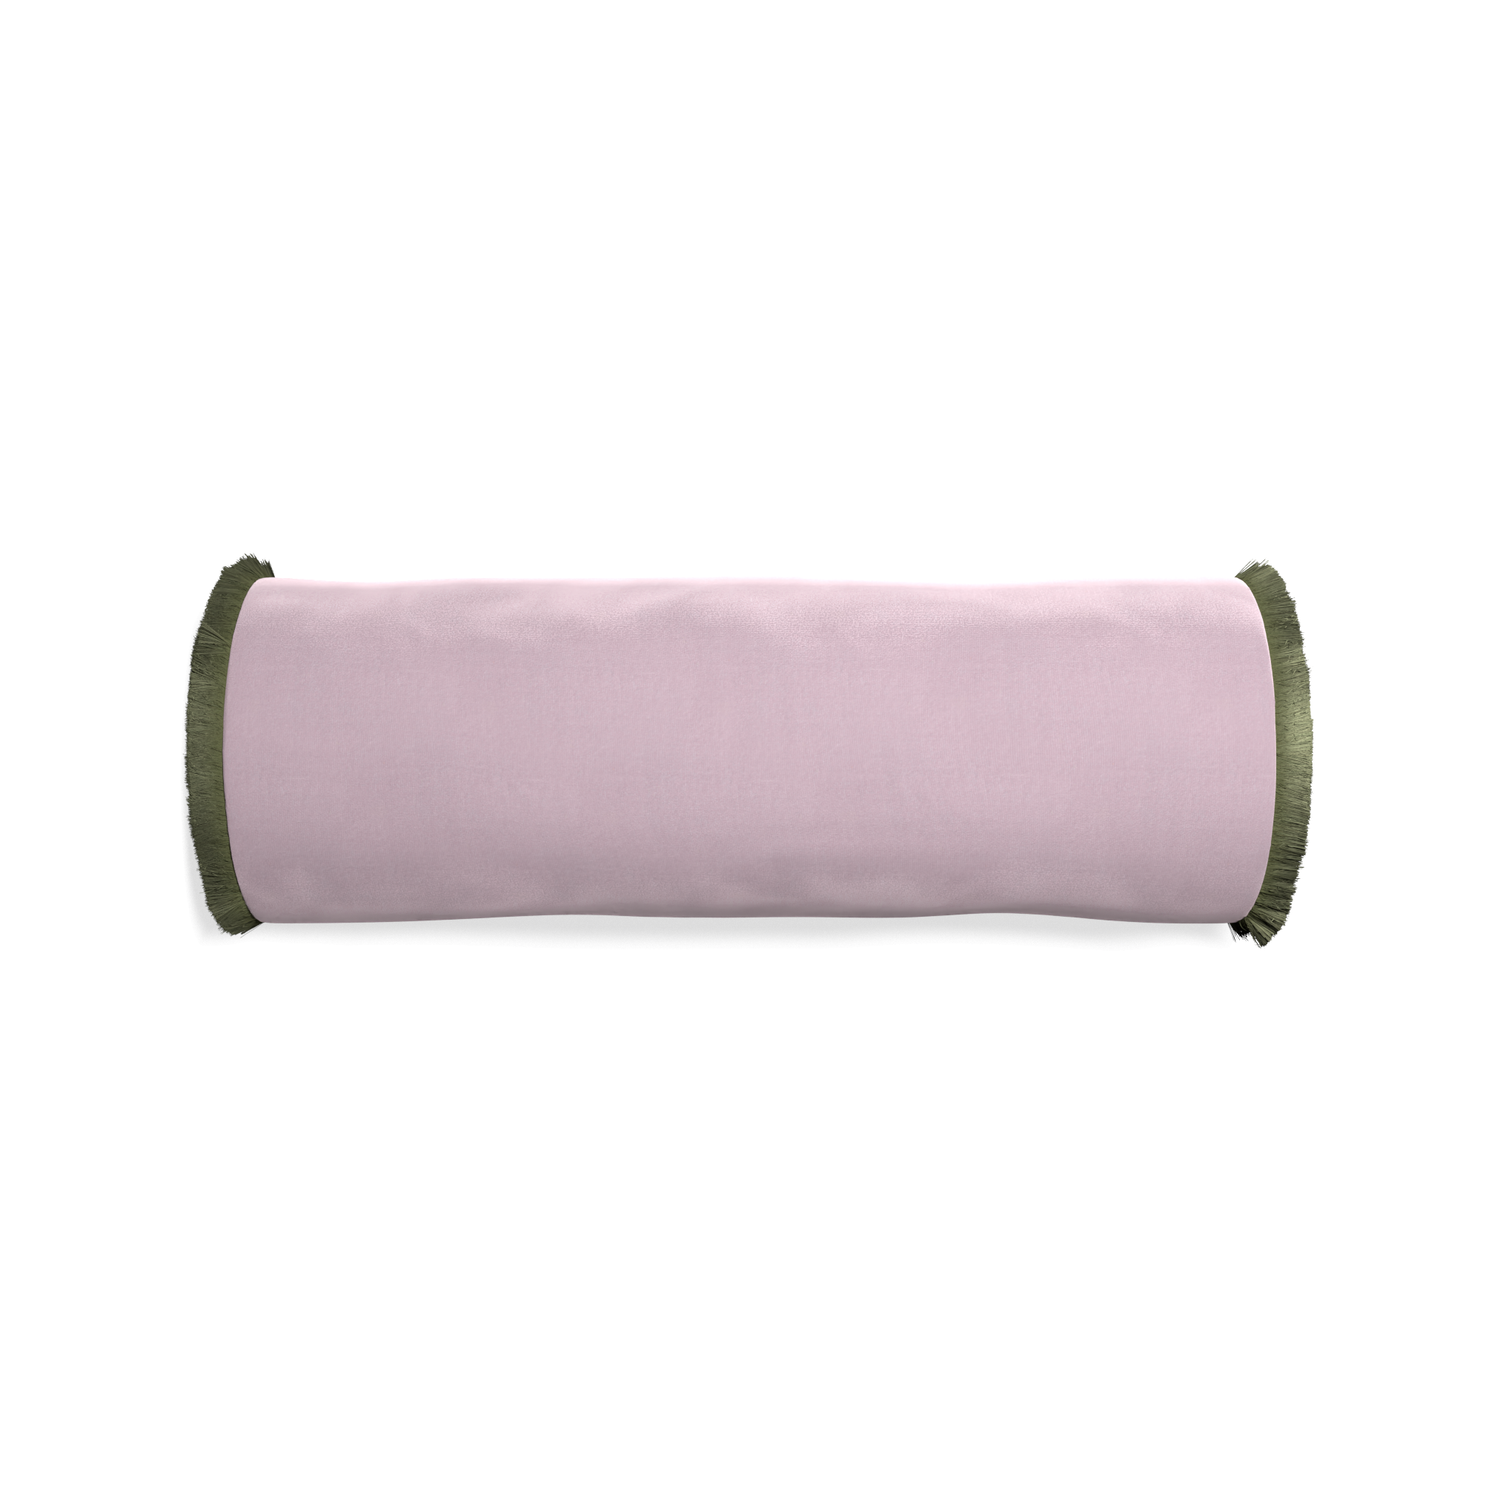 Bolster lilac velvet custom pillow with sage fringe on white background